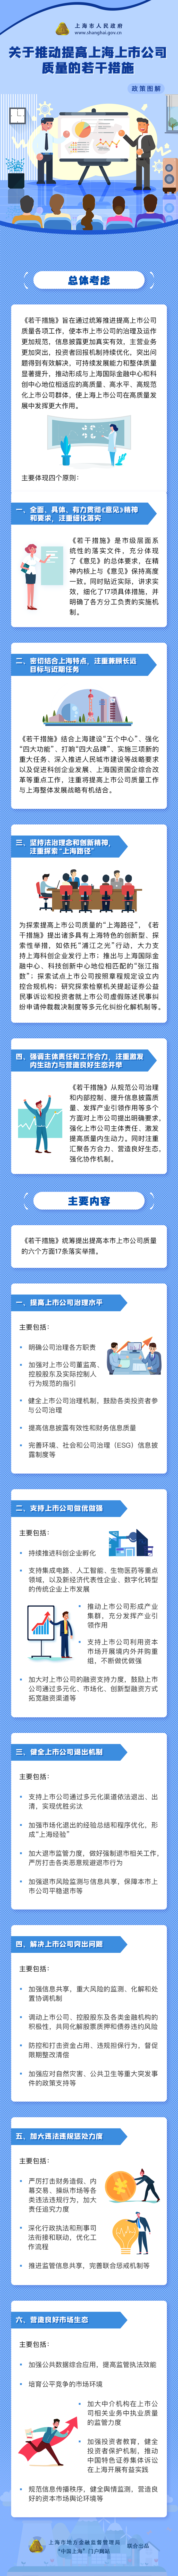 一图读懂《关于推动提高上海上市公司质量的若干措施》.png